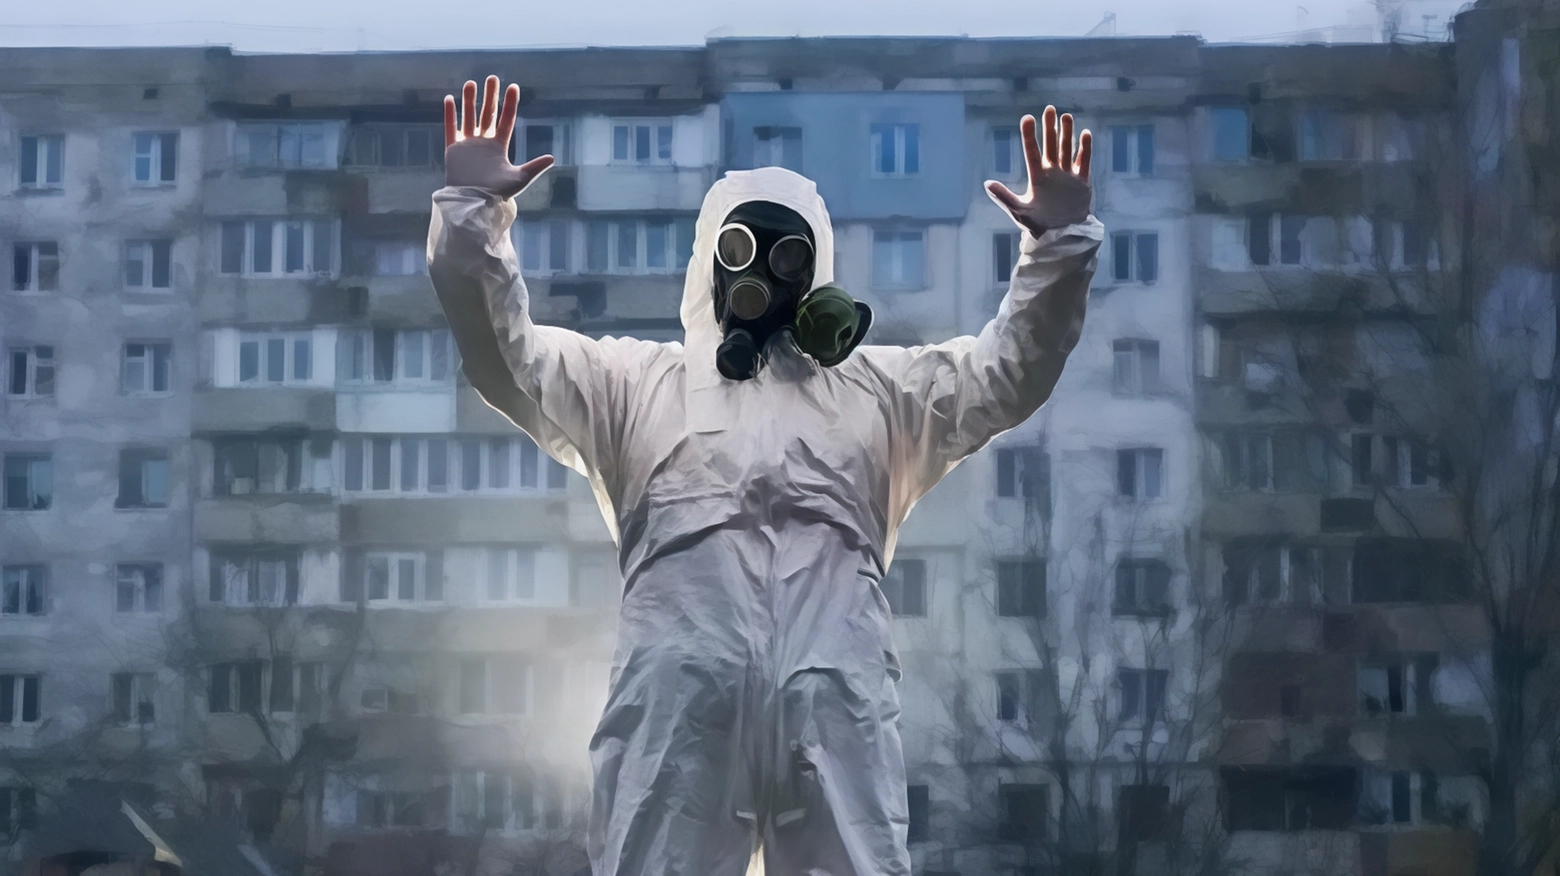 Il 26 aprile 1986, l'incidente nucleare di Chernobyl cambiò la storia con migliaia di vittime e sfollati. A 38 anni di distanza, l'eredità di radiazioni continua a minacciare l'ambiente e la salute umana.